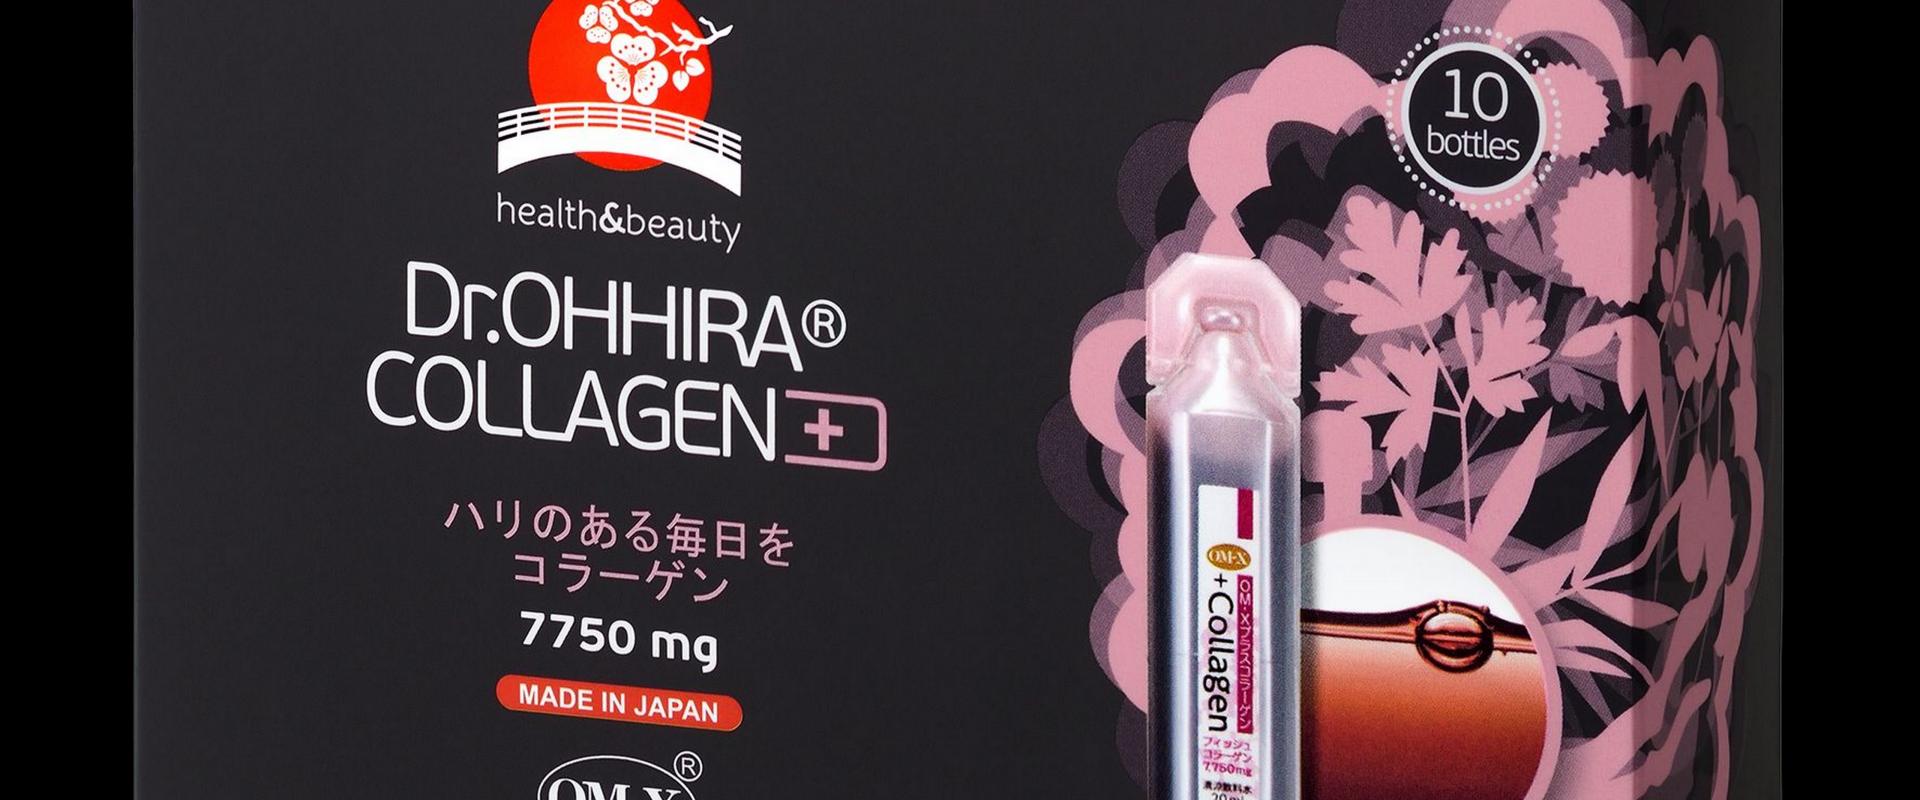 Japońskie suplementy diety oraz kosmetyki Dr.OHHIRA wchodzą na polski rynek